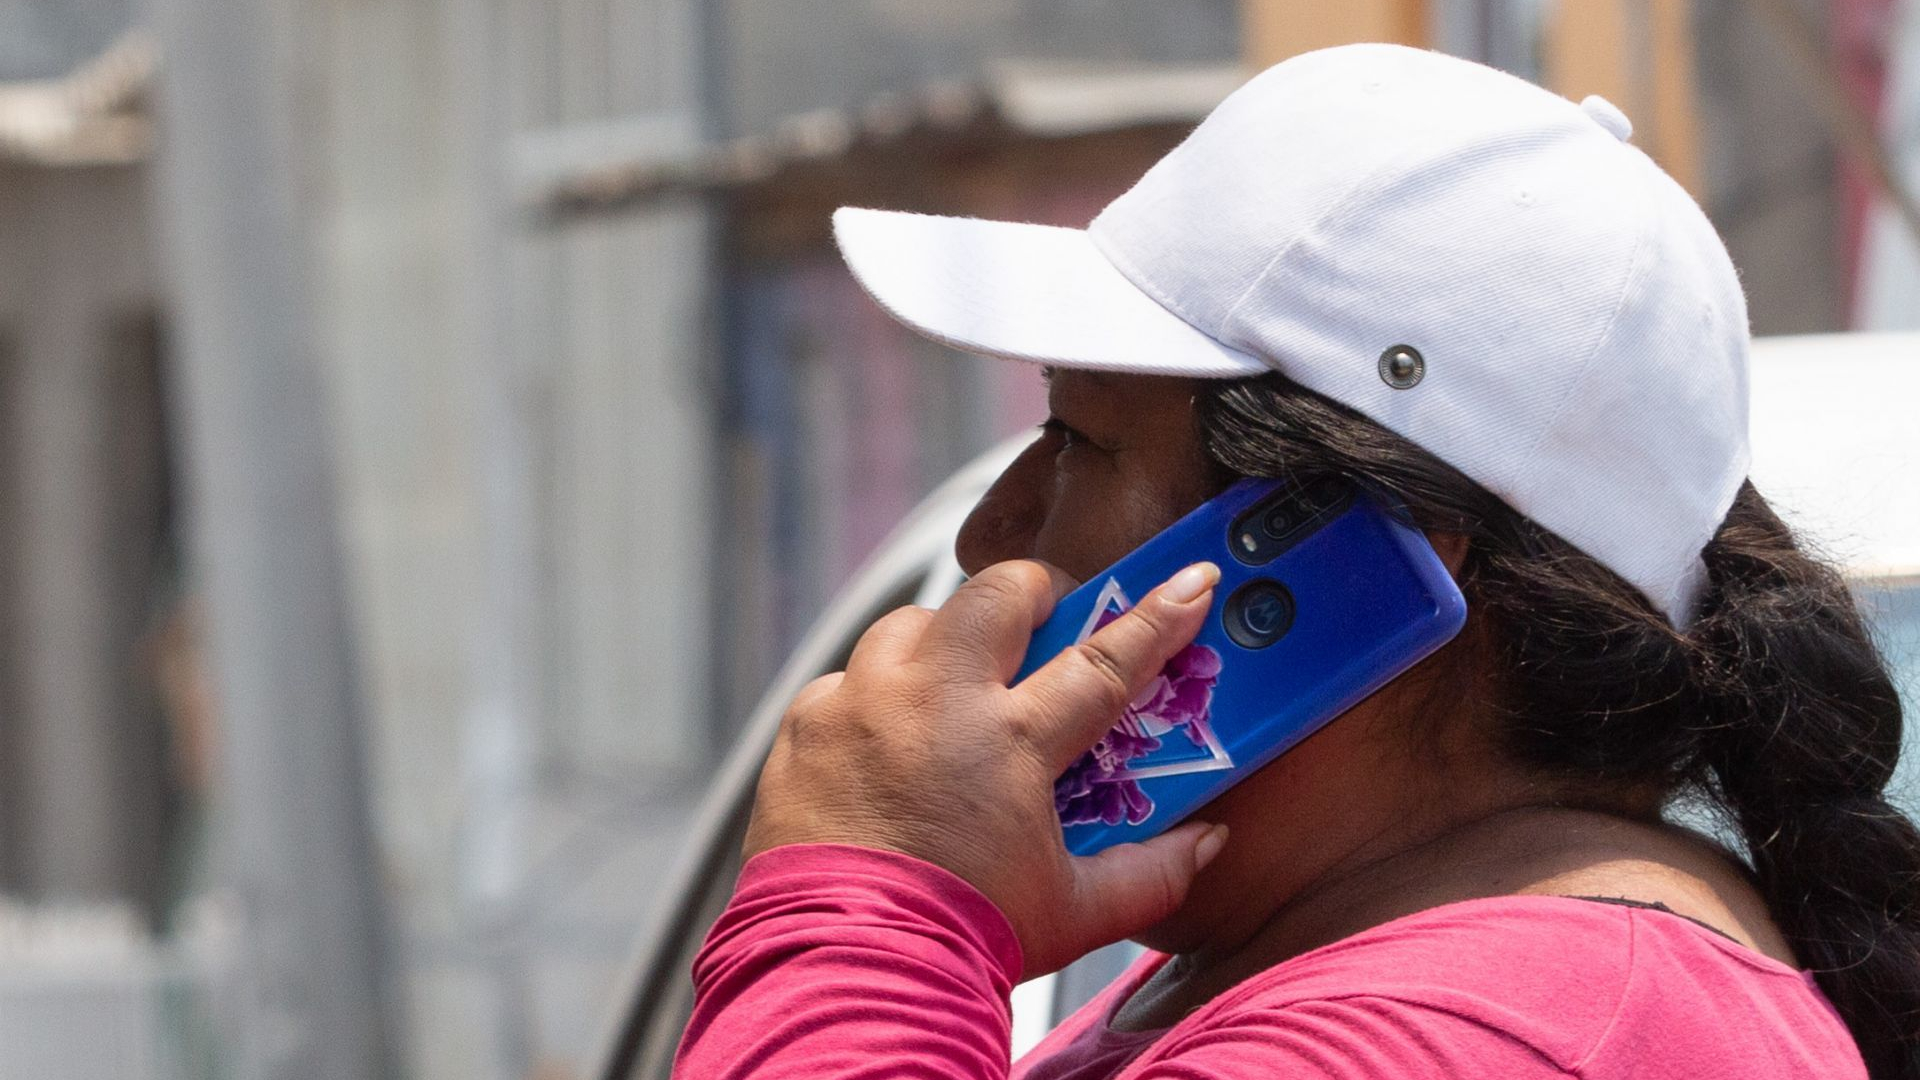 En México se cifran en decenas de miles los usuarios que han recibido mensajes de texto, llamadas y correos de personas que se hacen pasar por el banco para luego vaciar sus cuentas. (Foto: Cuartoscuro)